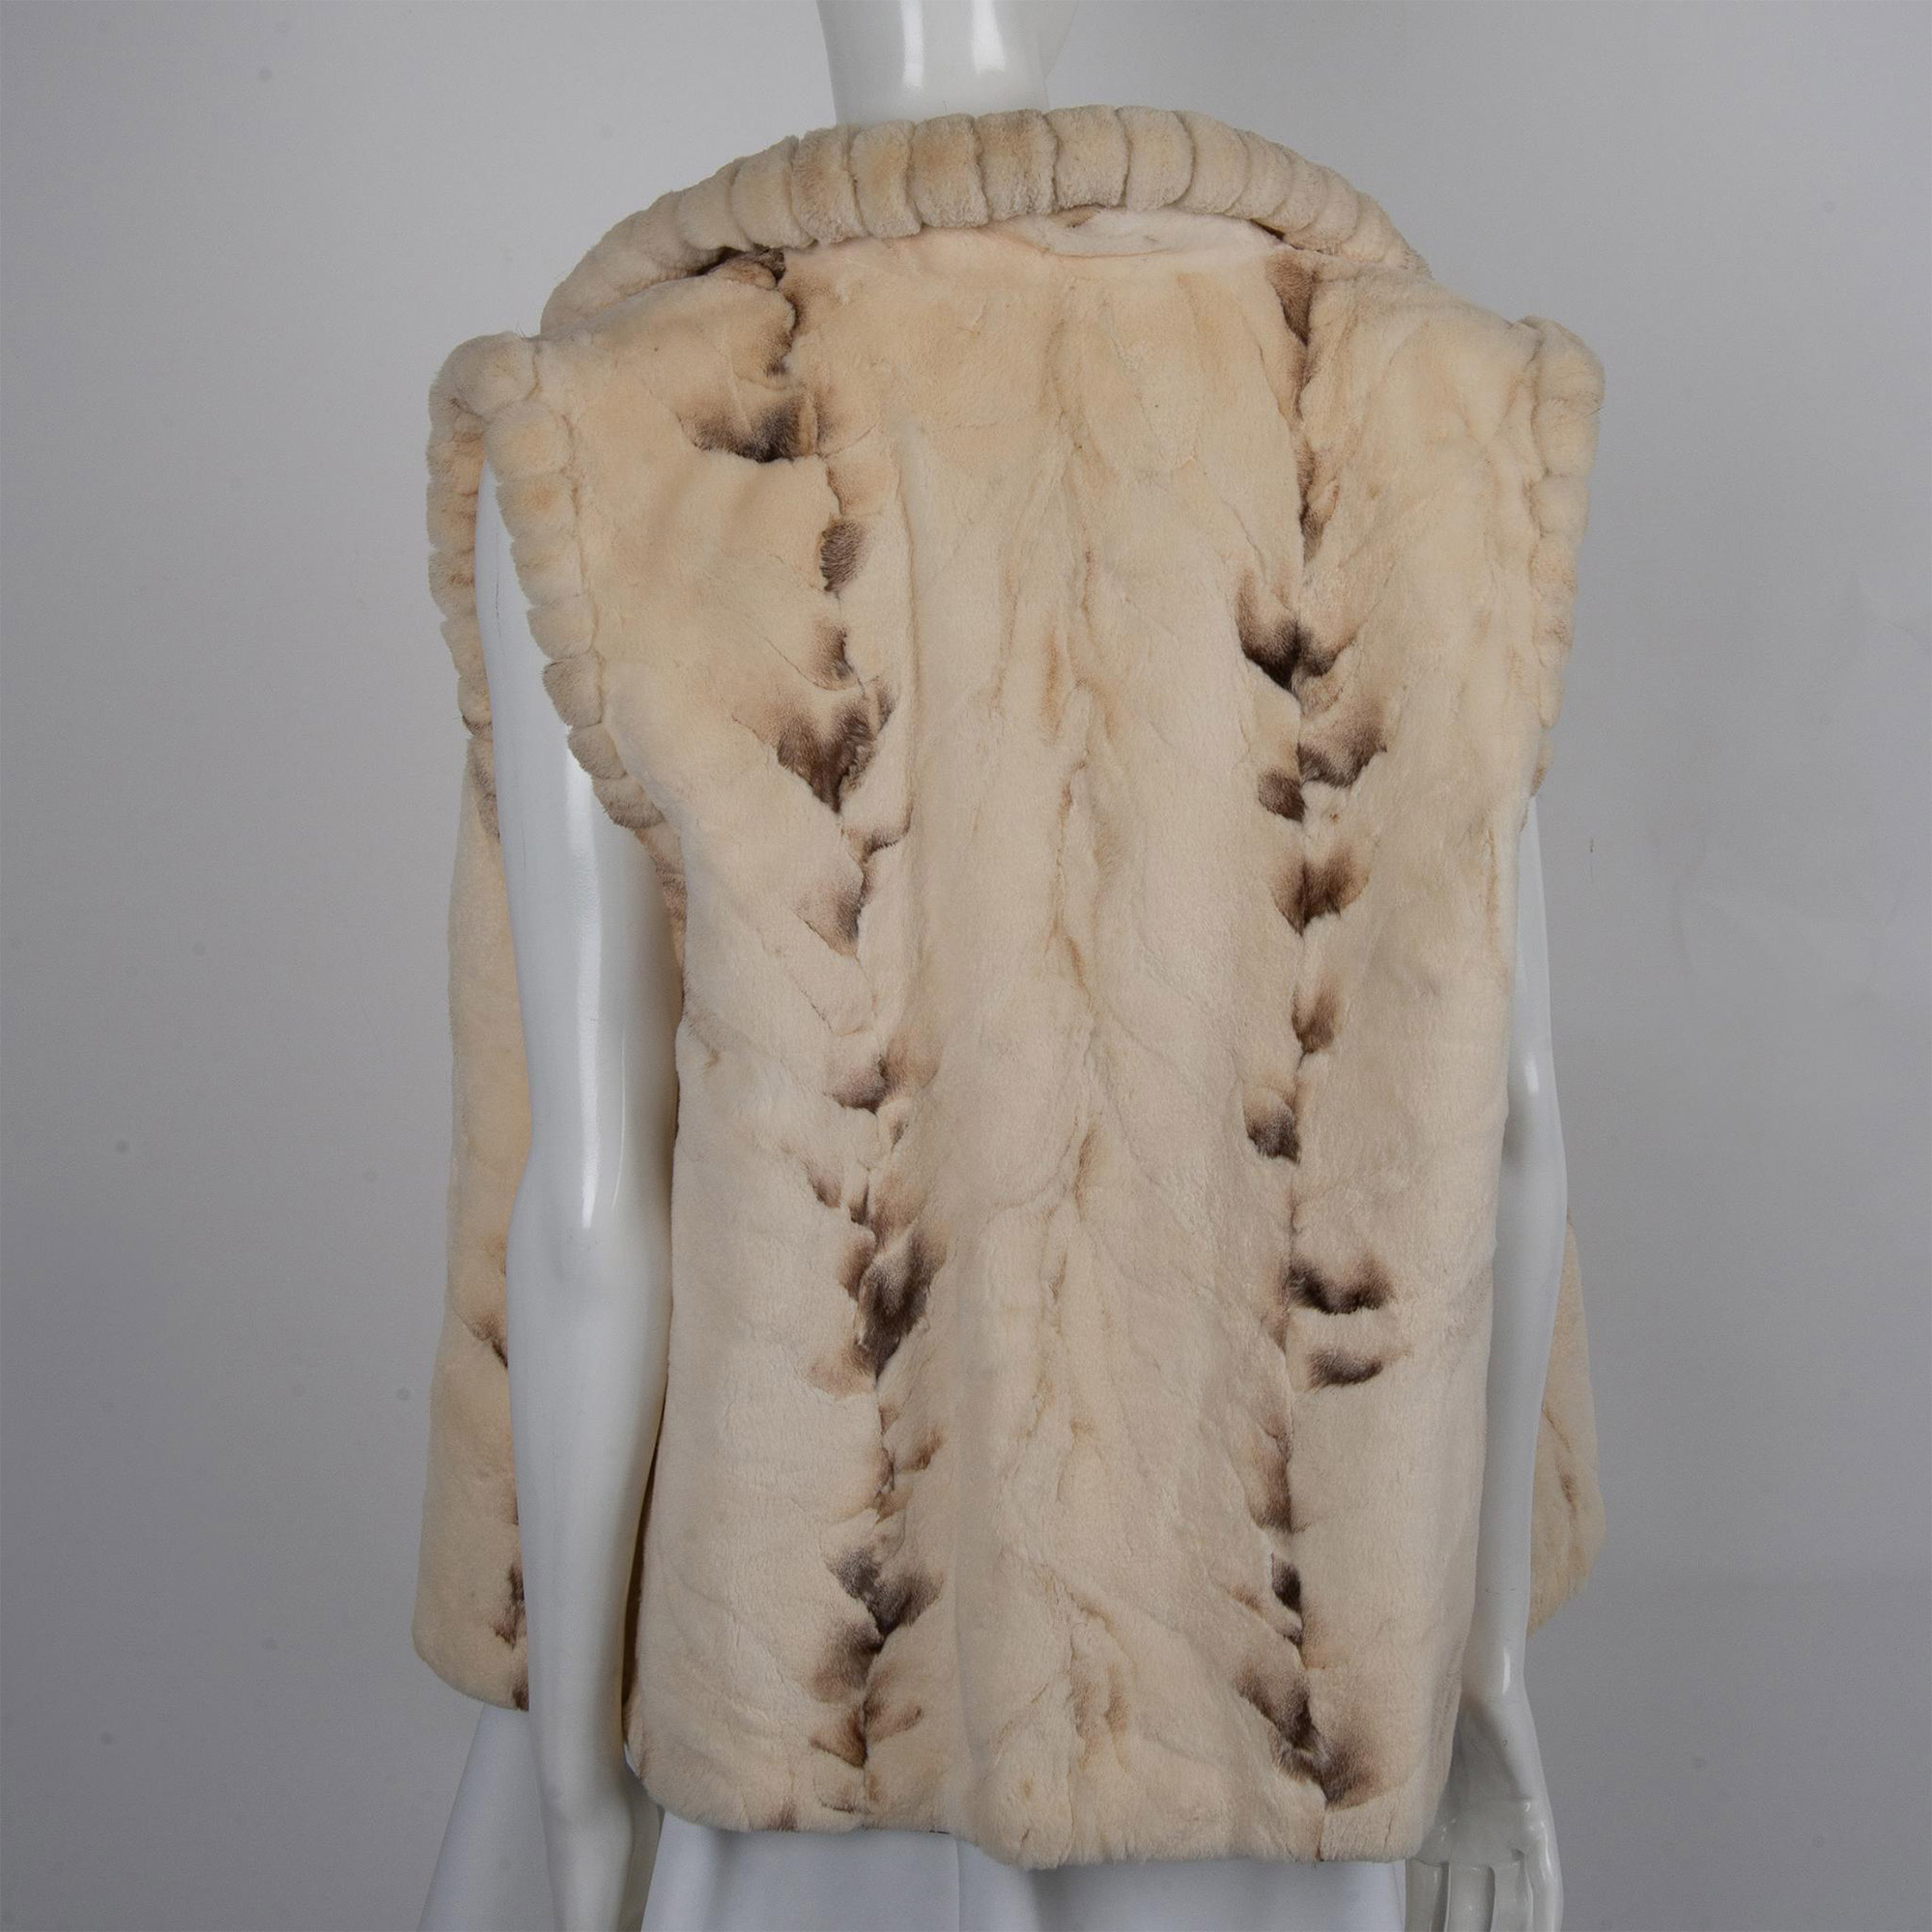 Sitka Fur Gallery, Sheared Mink Vest - Image 5 of 6